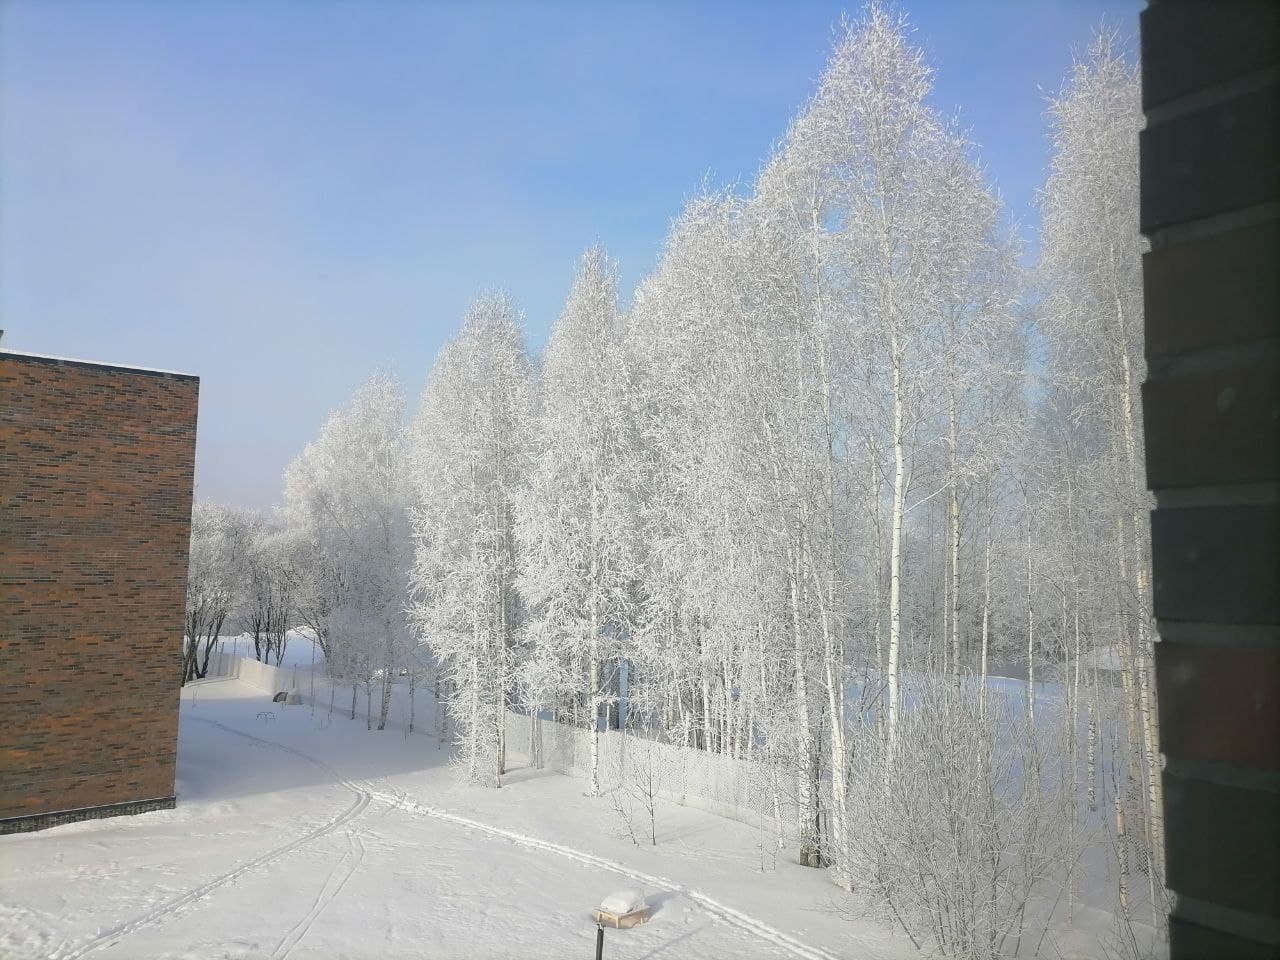 Сильные морозы в новосибирске. Морозный Новосибирск. Морозная сортировки материала. Фото зима сильно морозная 2003 год. Морозная погода в городе.